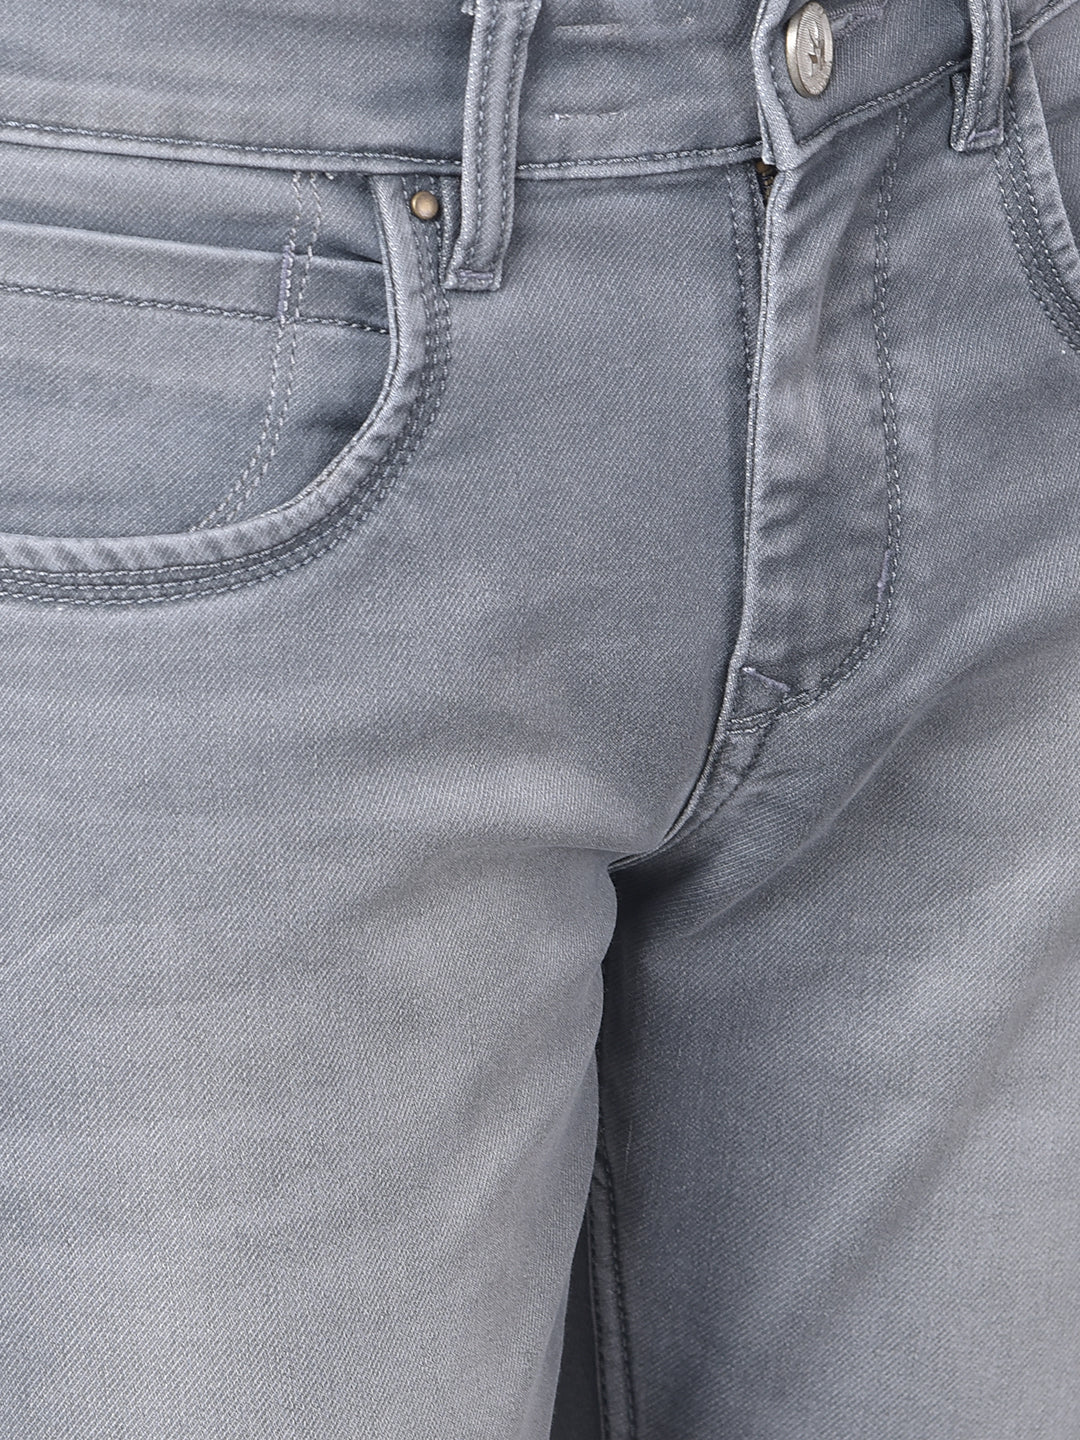 Grey Light Fade Jeans-Men Jeans-Crimsoune Club